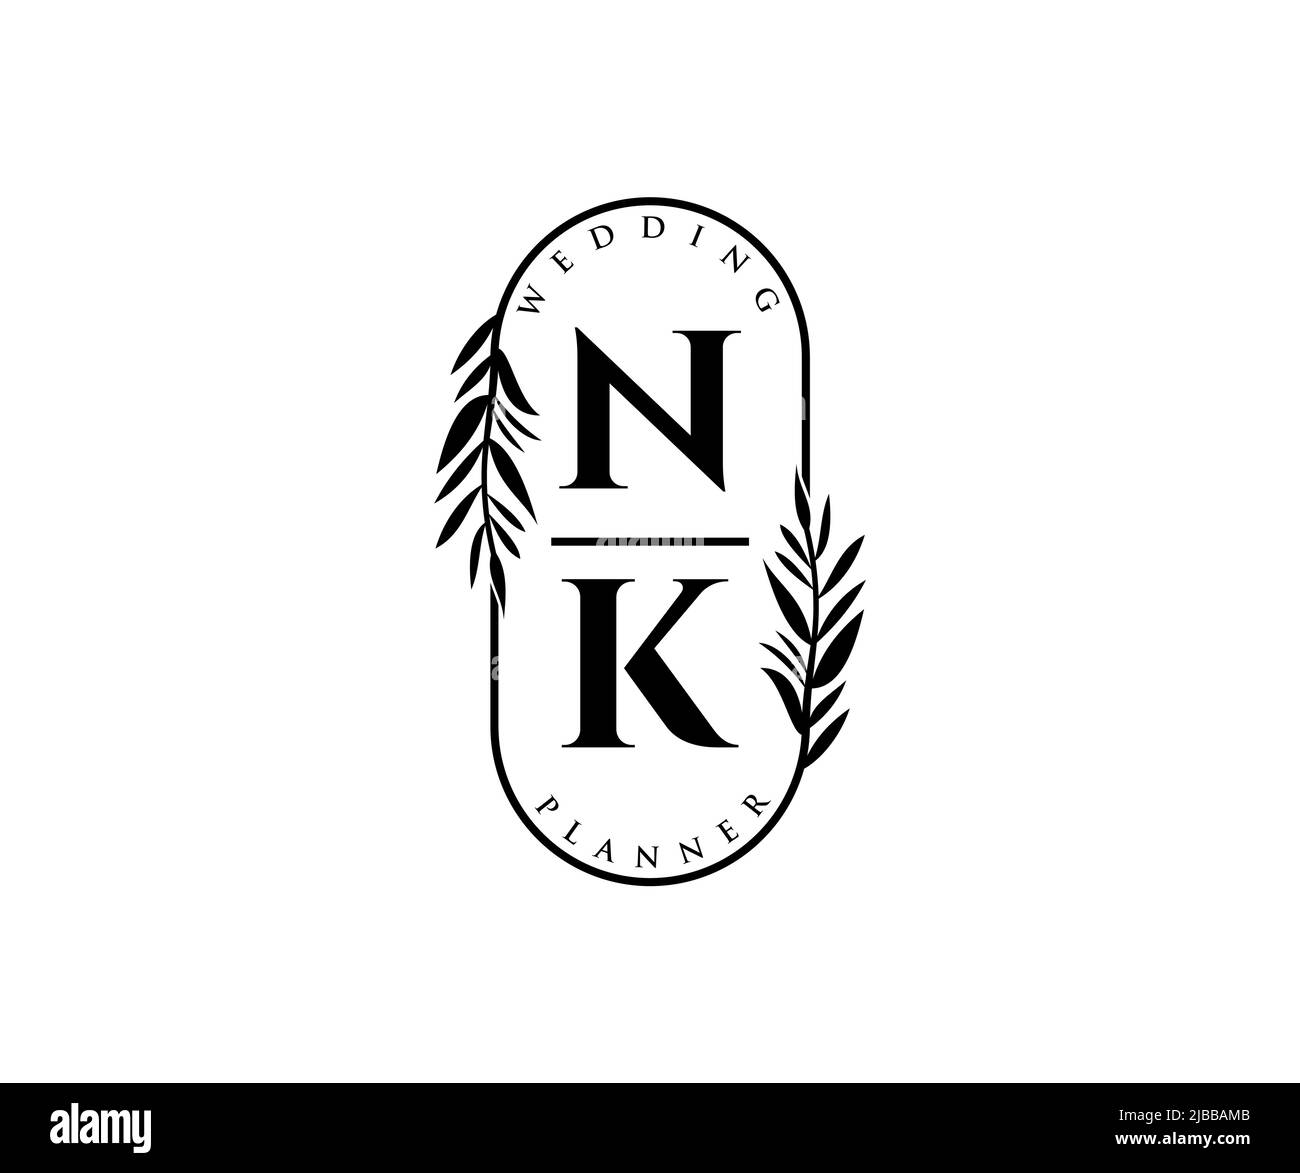 Nk Initial Monogram Logo: Stock-Vektorgrafik (Lizenzfrei) 343104803